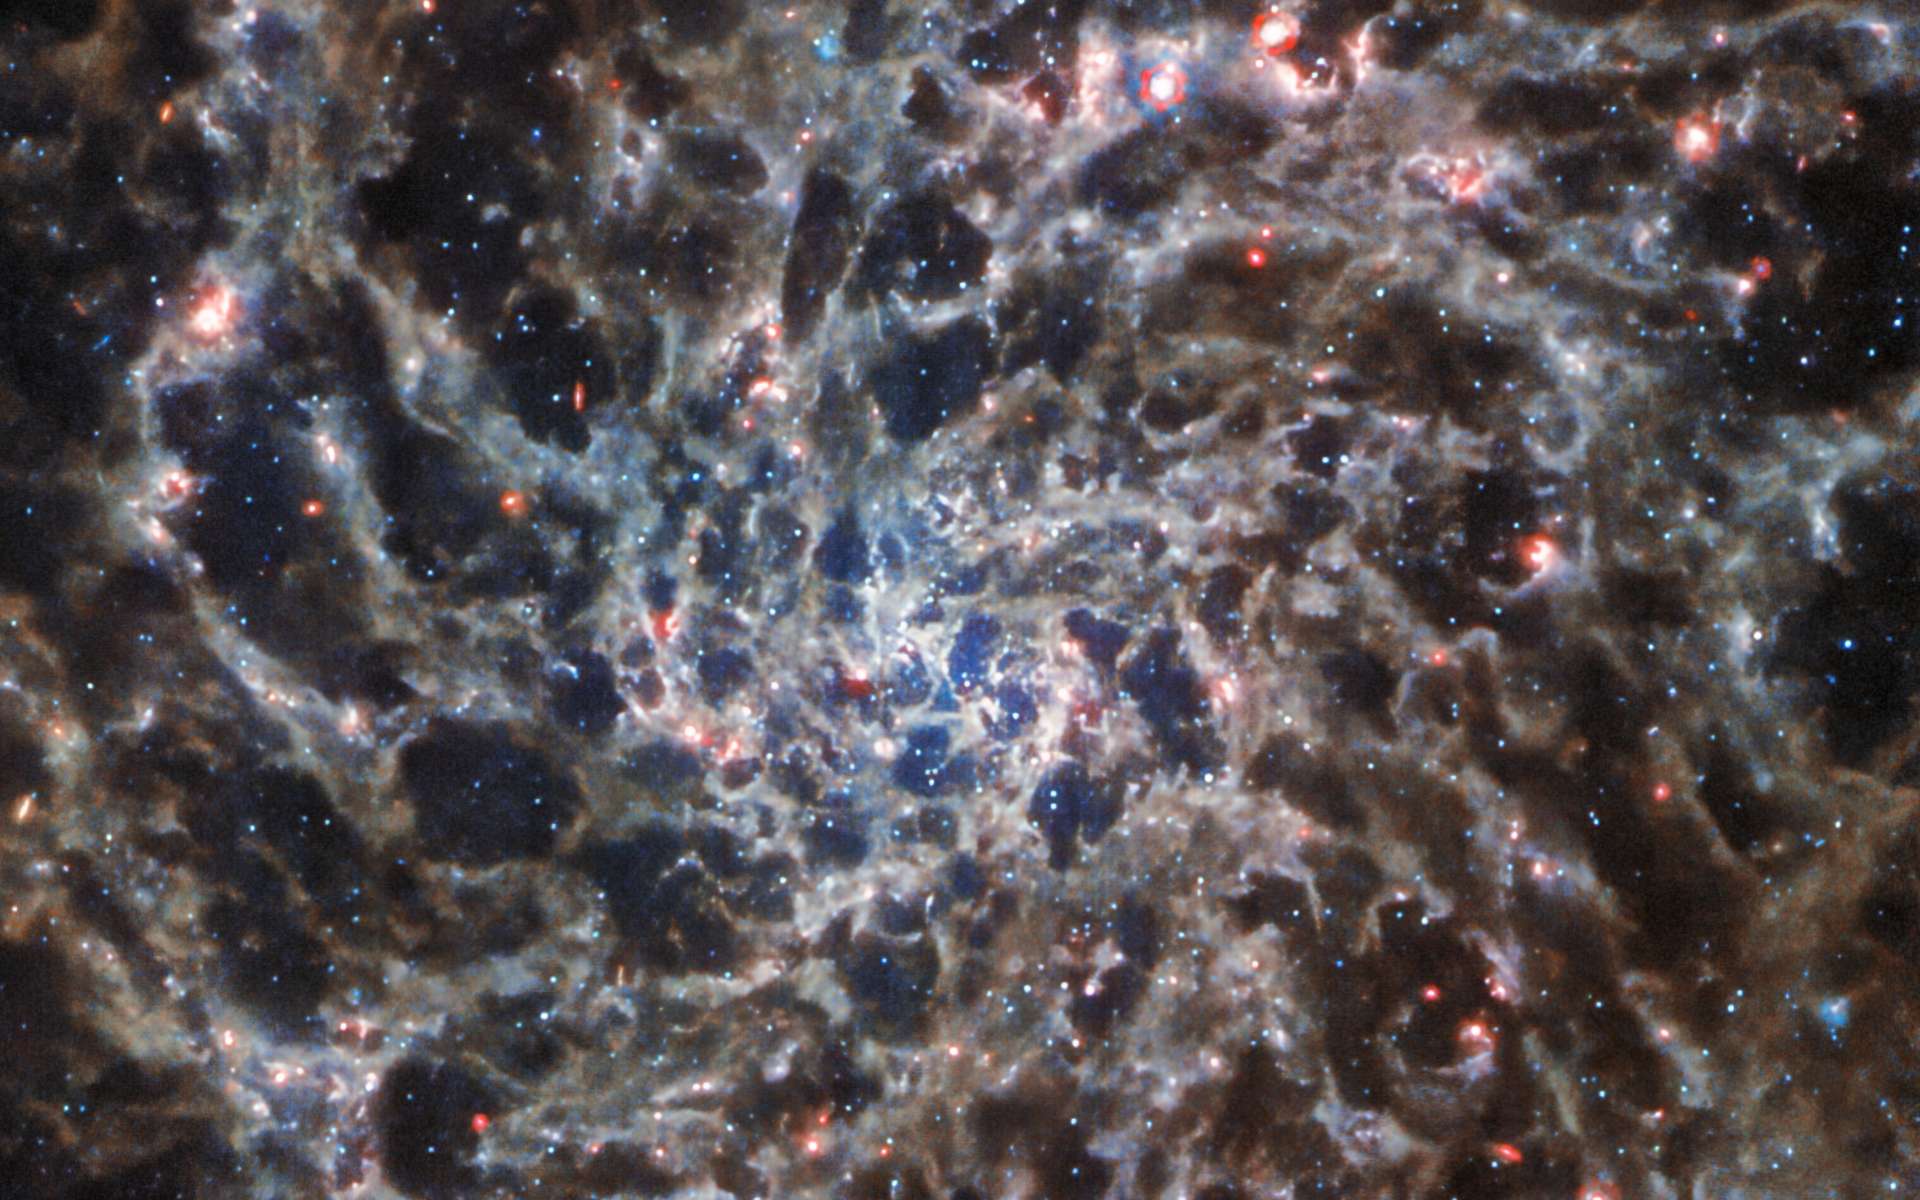 Images sublimes de l'intérieur d'une galaxie spirale capturées par James-Webb et Hubble